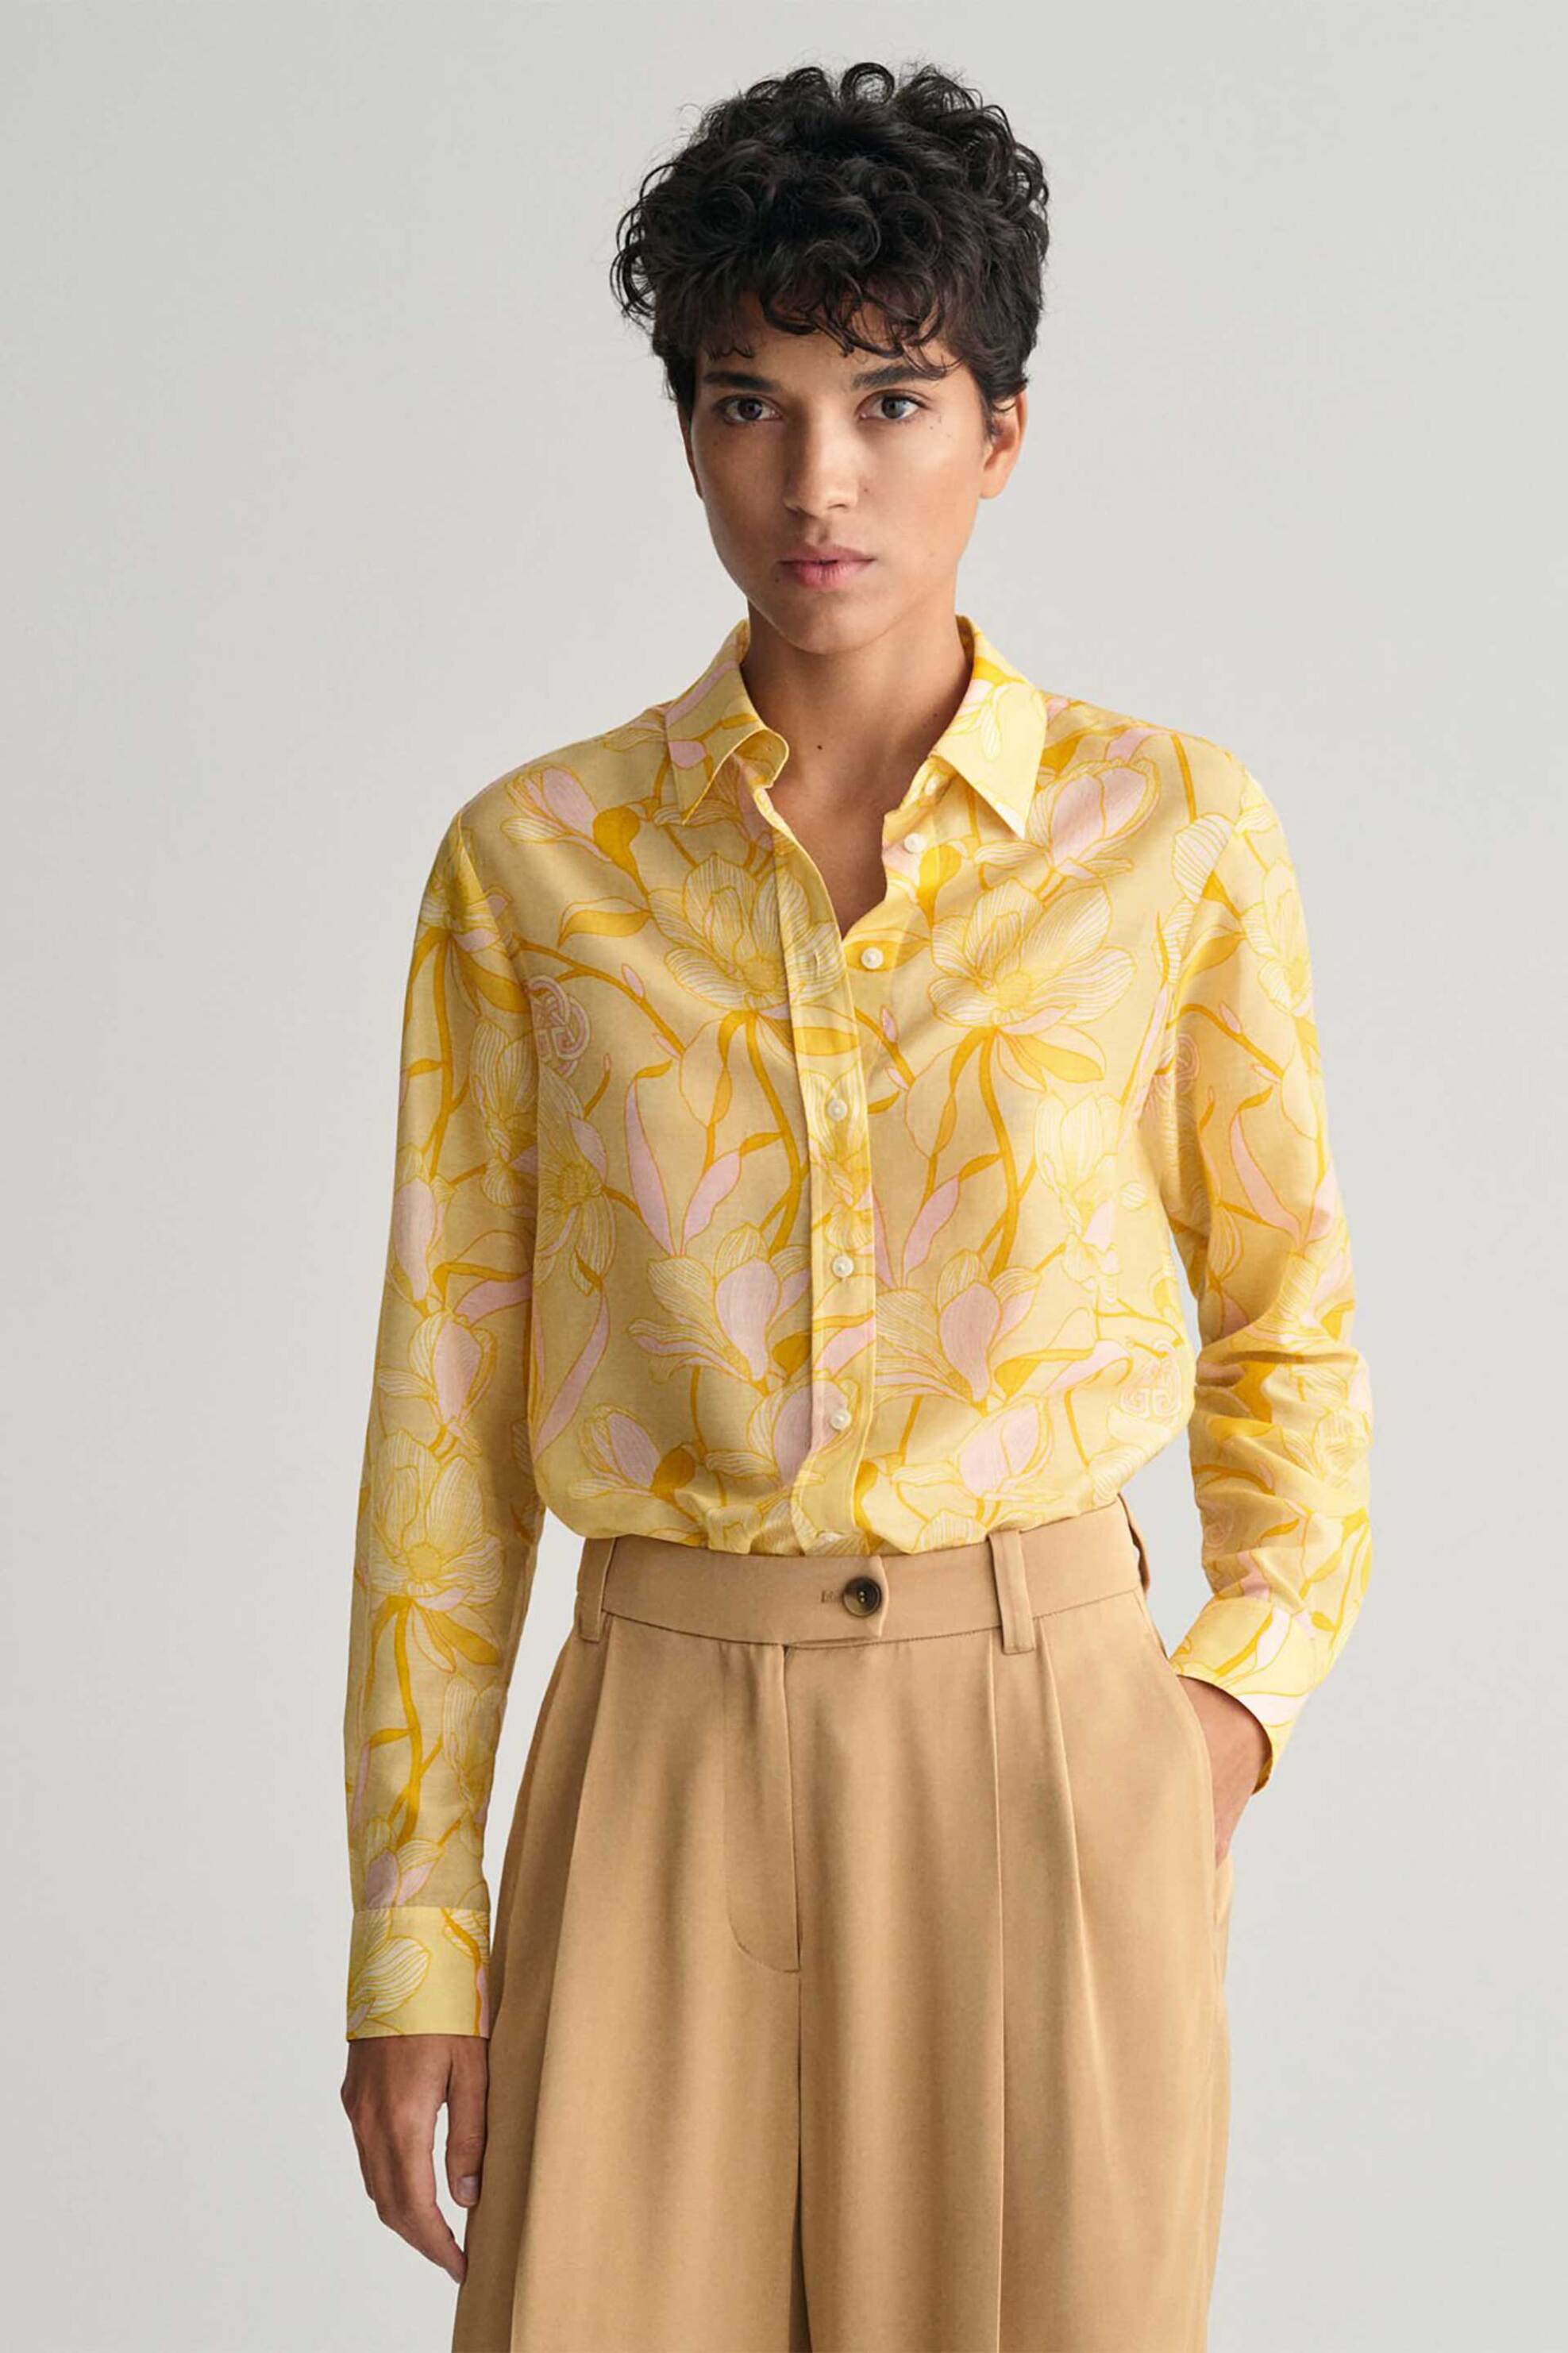 Γυναικεία Ρούχα & Αξεσουάρ > Γυναικεία Ρούχα > Γυναικεία Πουκάμισα > Γυναικεία Πουκάμισα Casual Gant γυναικείο πουκάμισο με magnolia print Regular Fit - 4300317 Κίτρινο Ανοιχτό